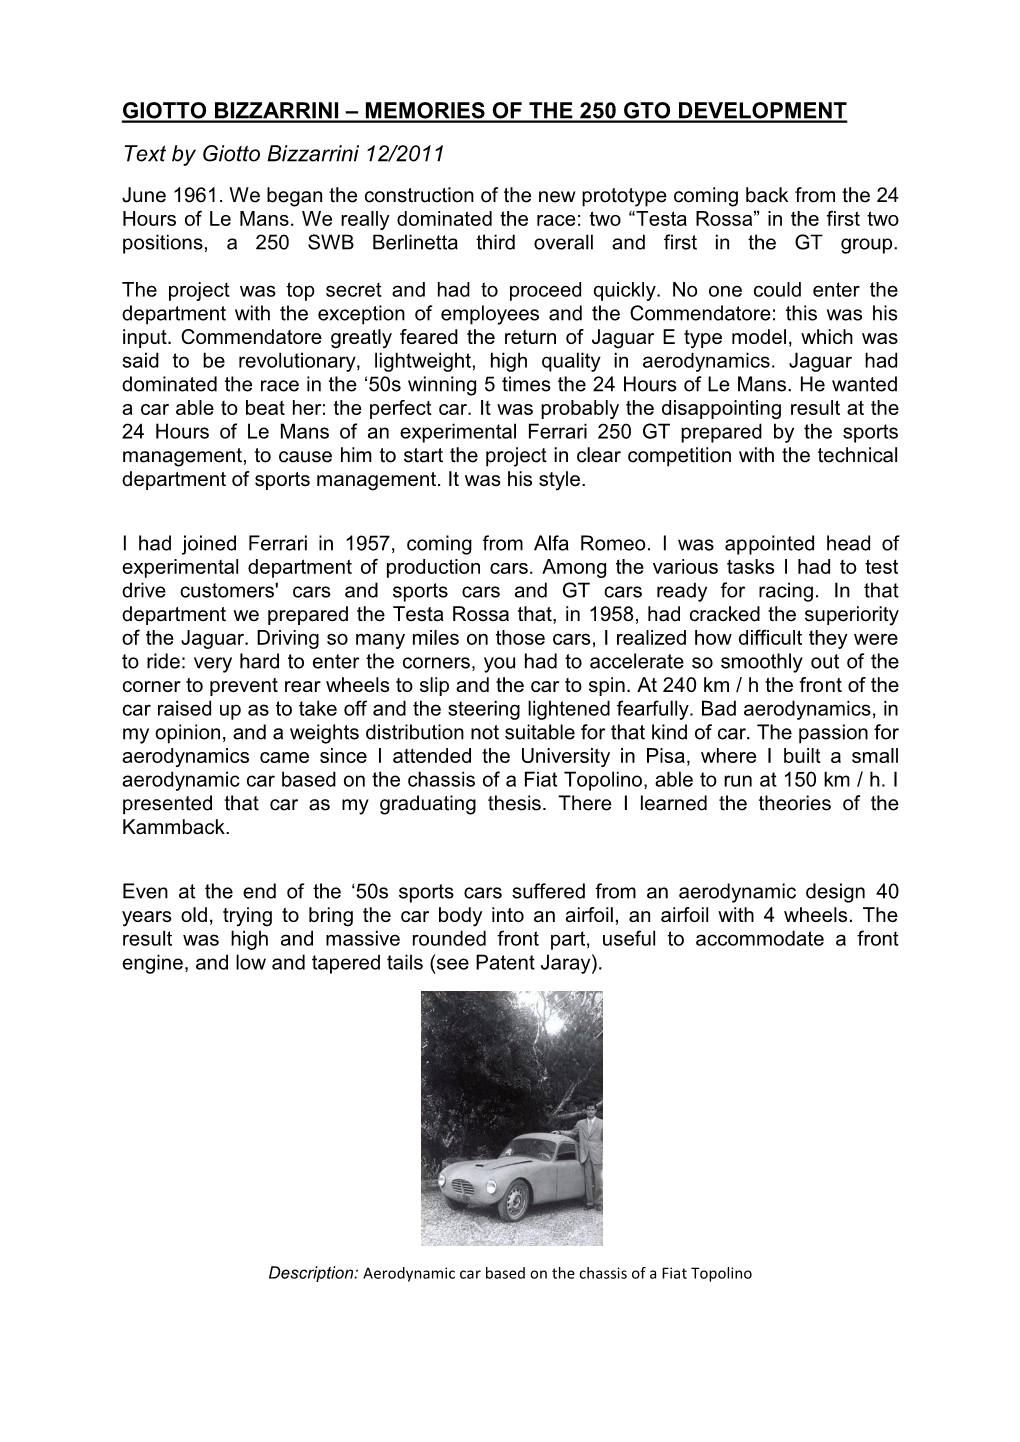 GIOTTO BIZZARRINI – MEMORIES of the 250 GTO DEVELOPMENT Text by Giotto Bizzarrini 12/2011 June 1961